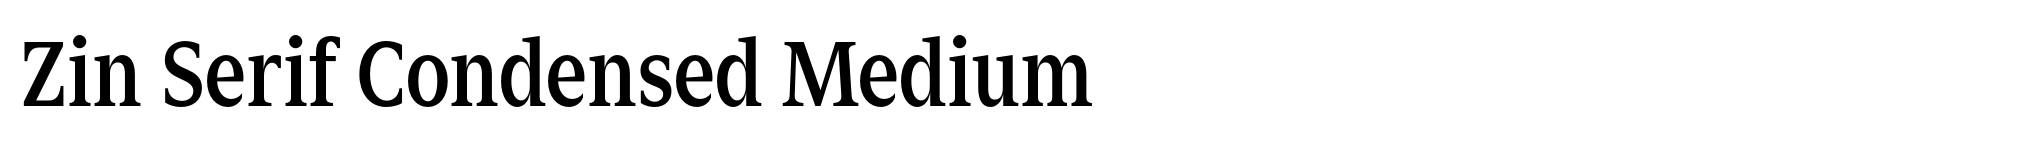 Zin Serif Condensed Medium image